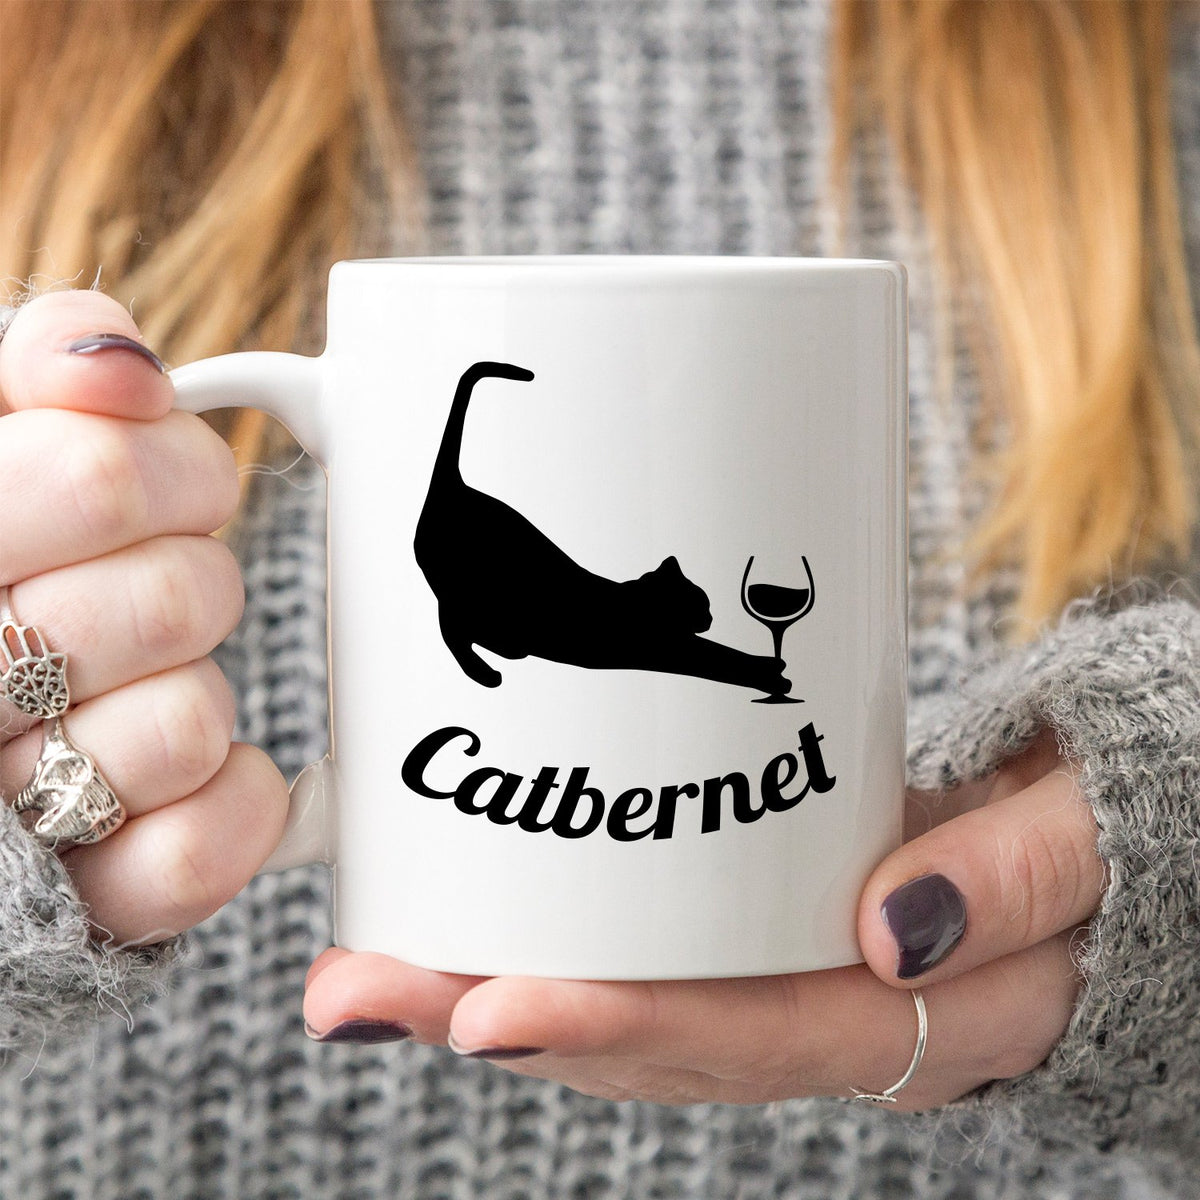 Catbernet - Ceramic Coffee Mug